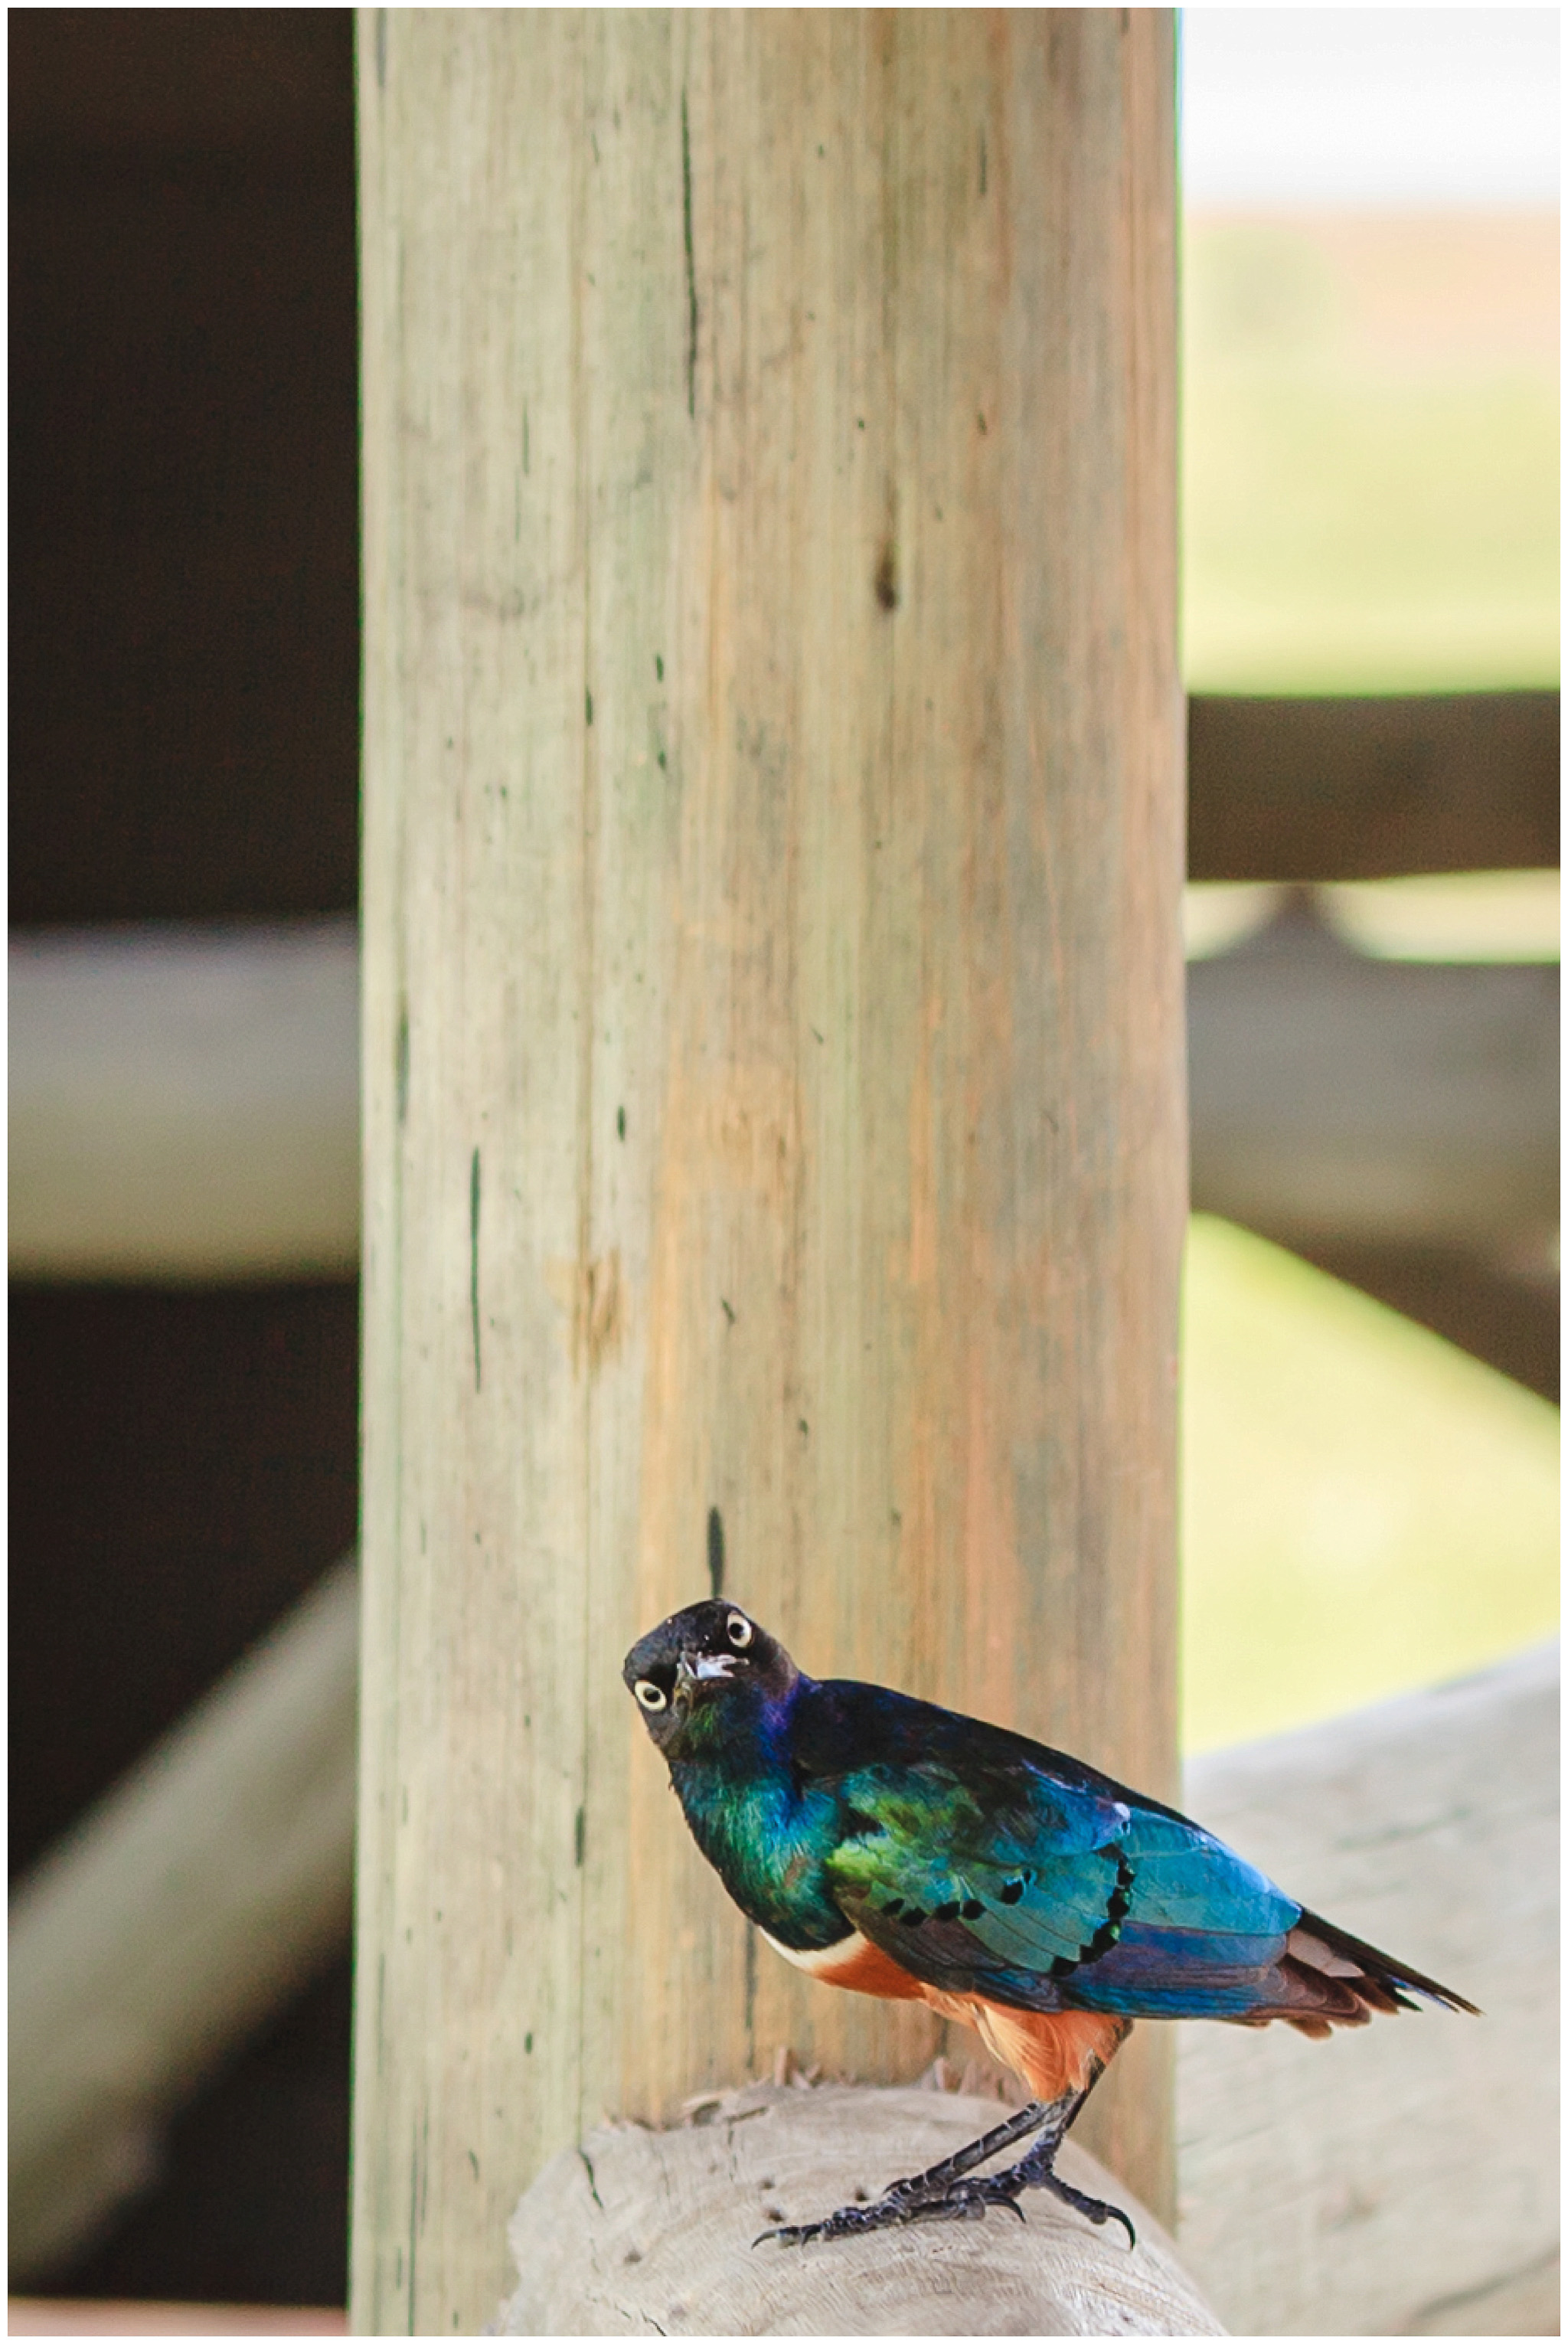 Colorful bird in Tarangire National Park, Tanzania, Africa